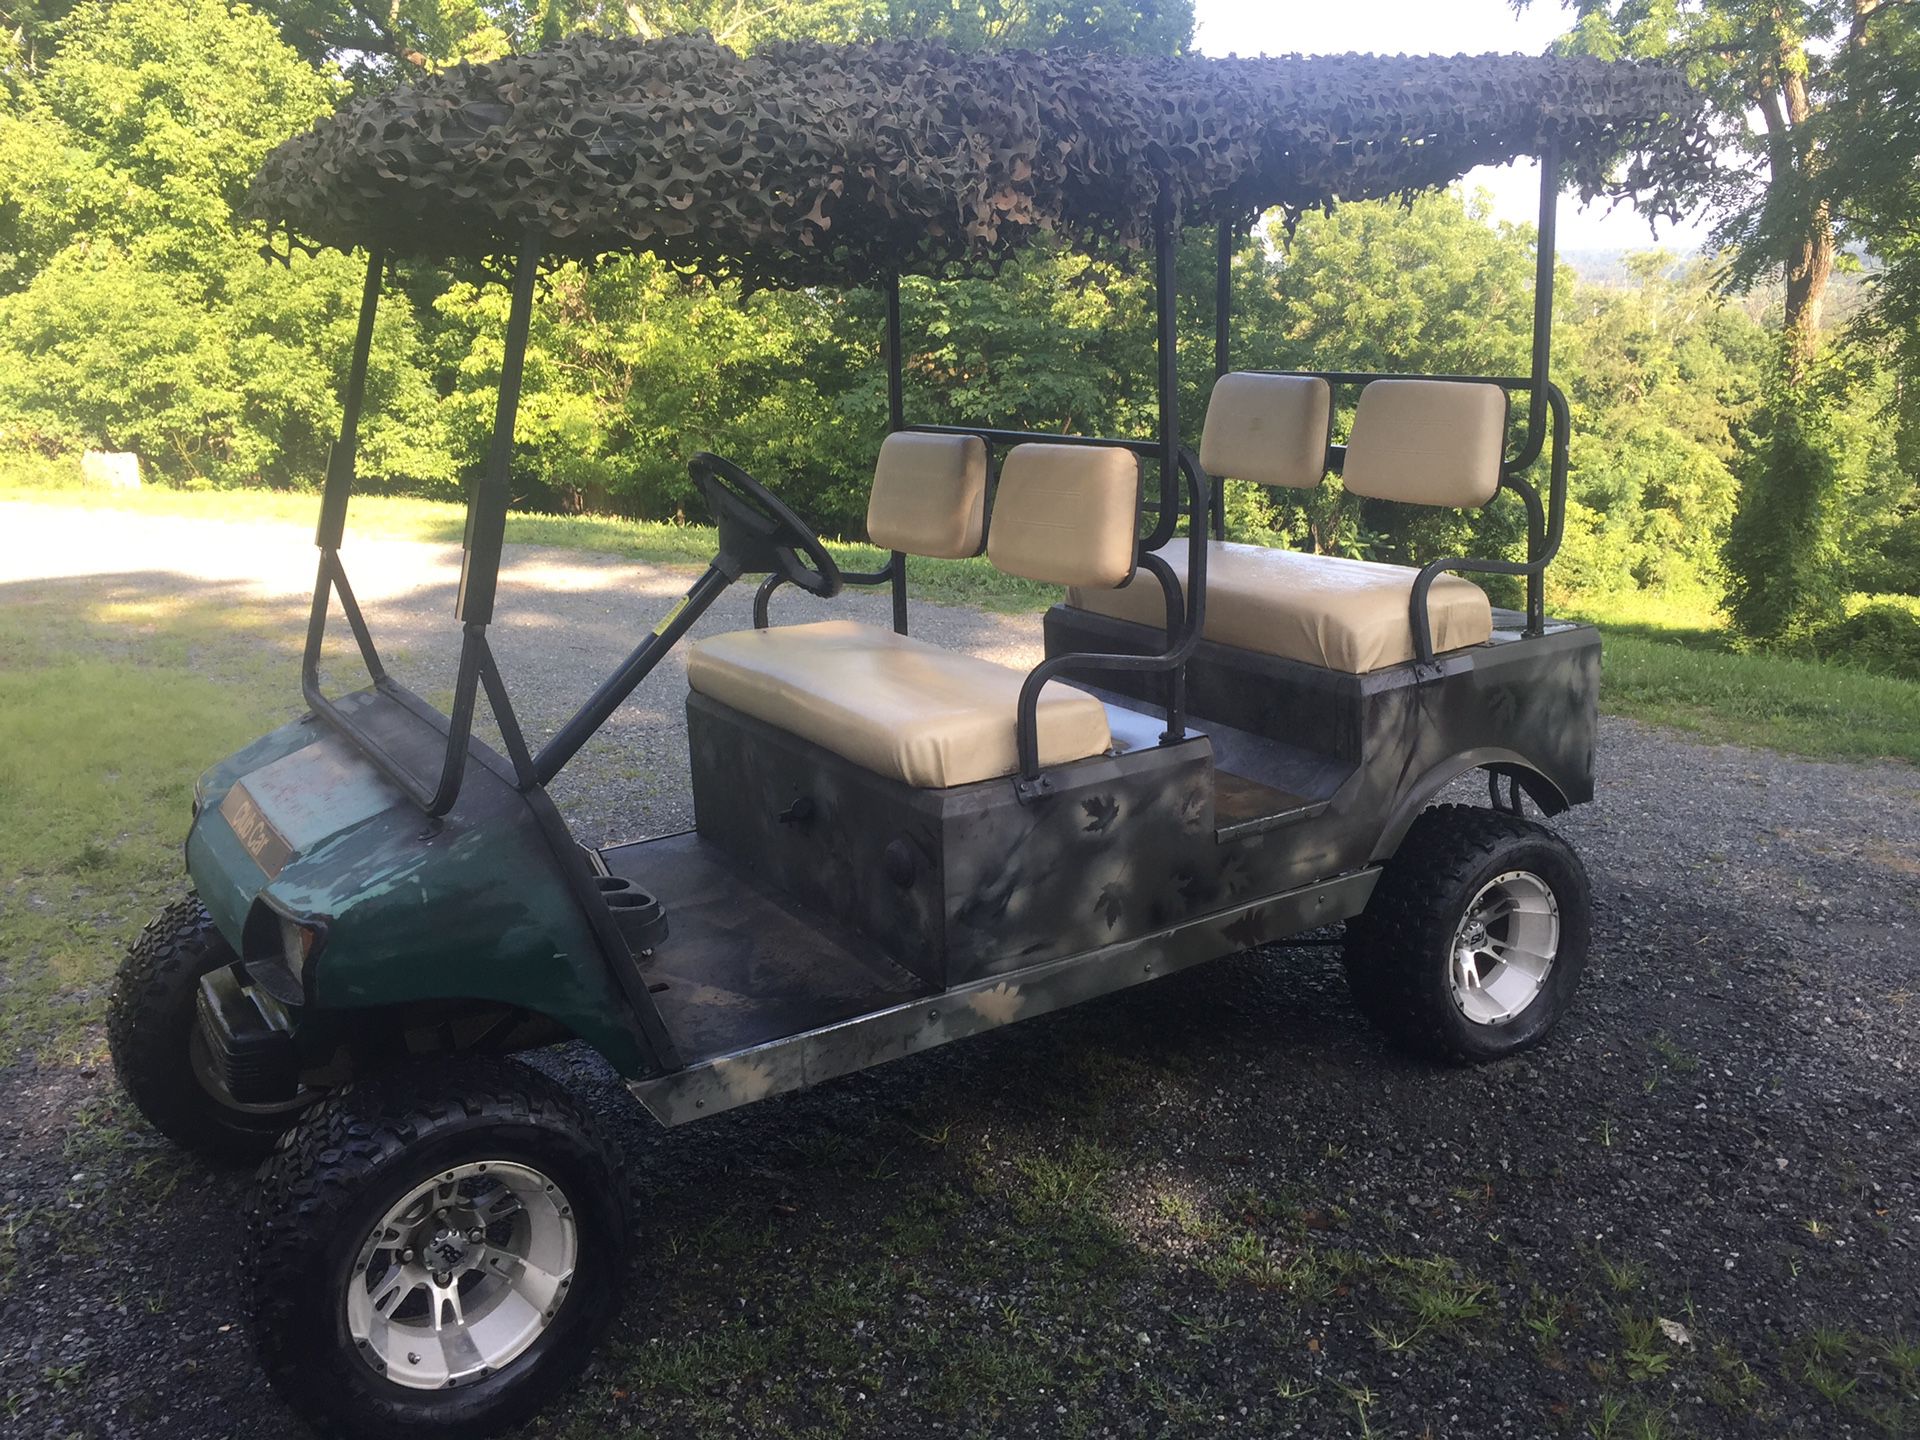 Extended Golf Cart